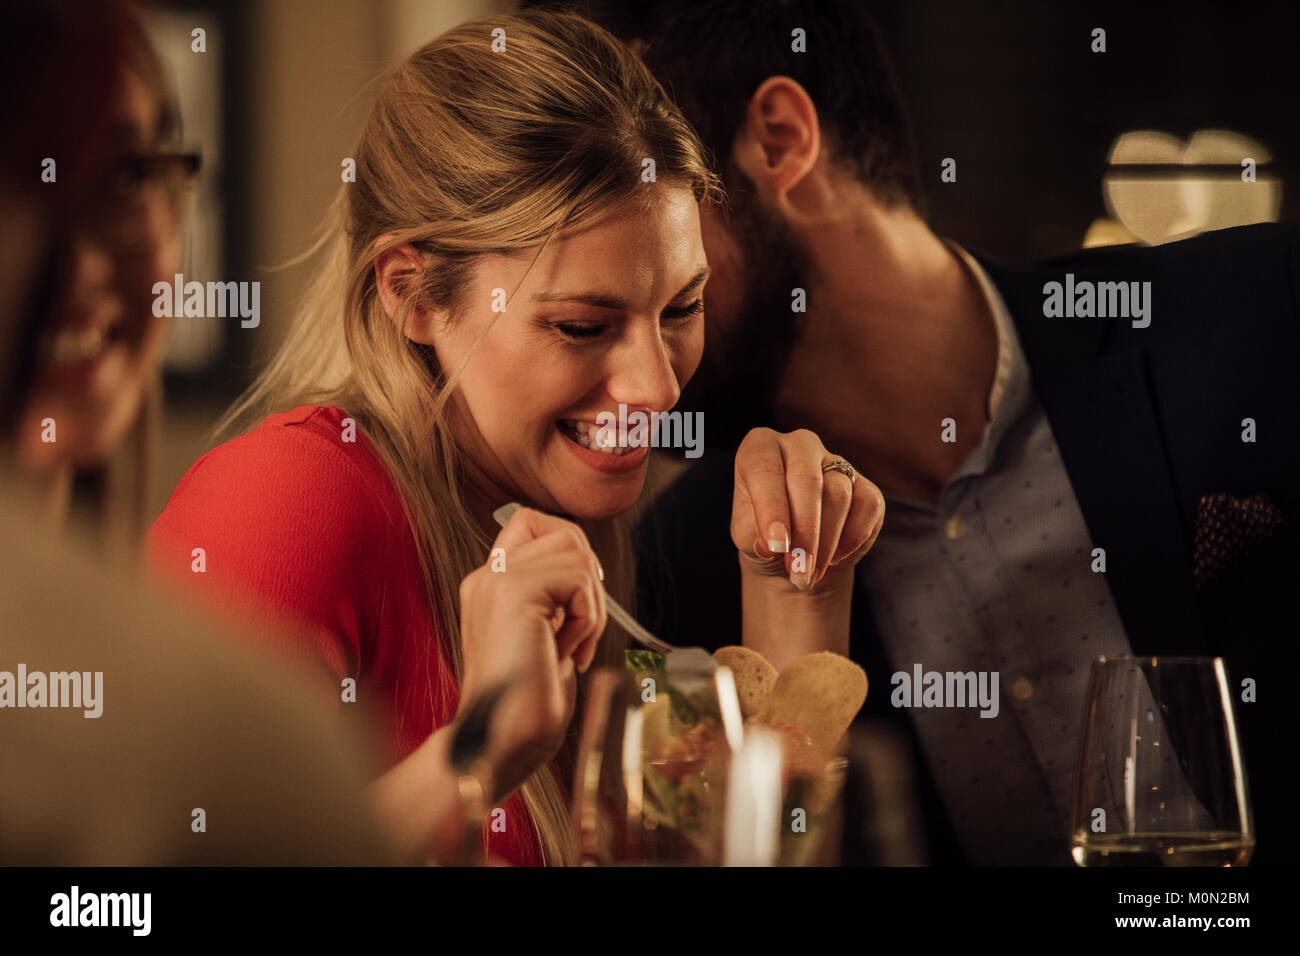 Couple romantique sont en cours tout en ayant un repas dans un restaurant. L'homme embrasse la femme sur sur la joue et elle est en riant. Banque D'Images